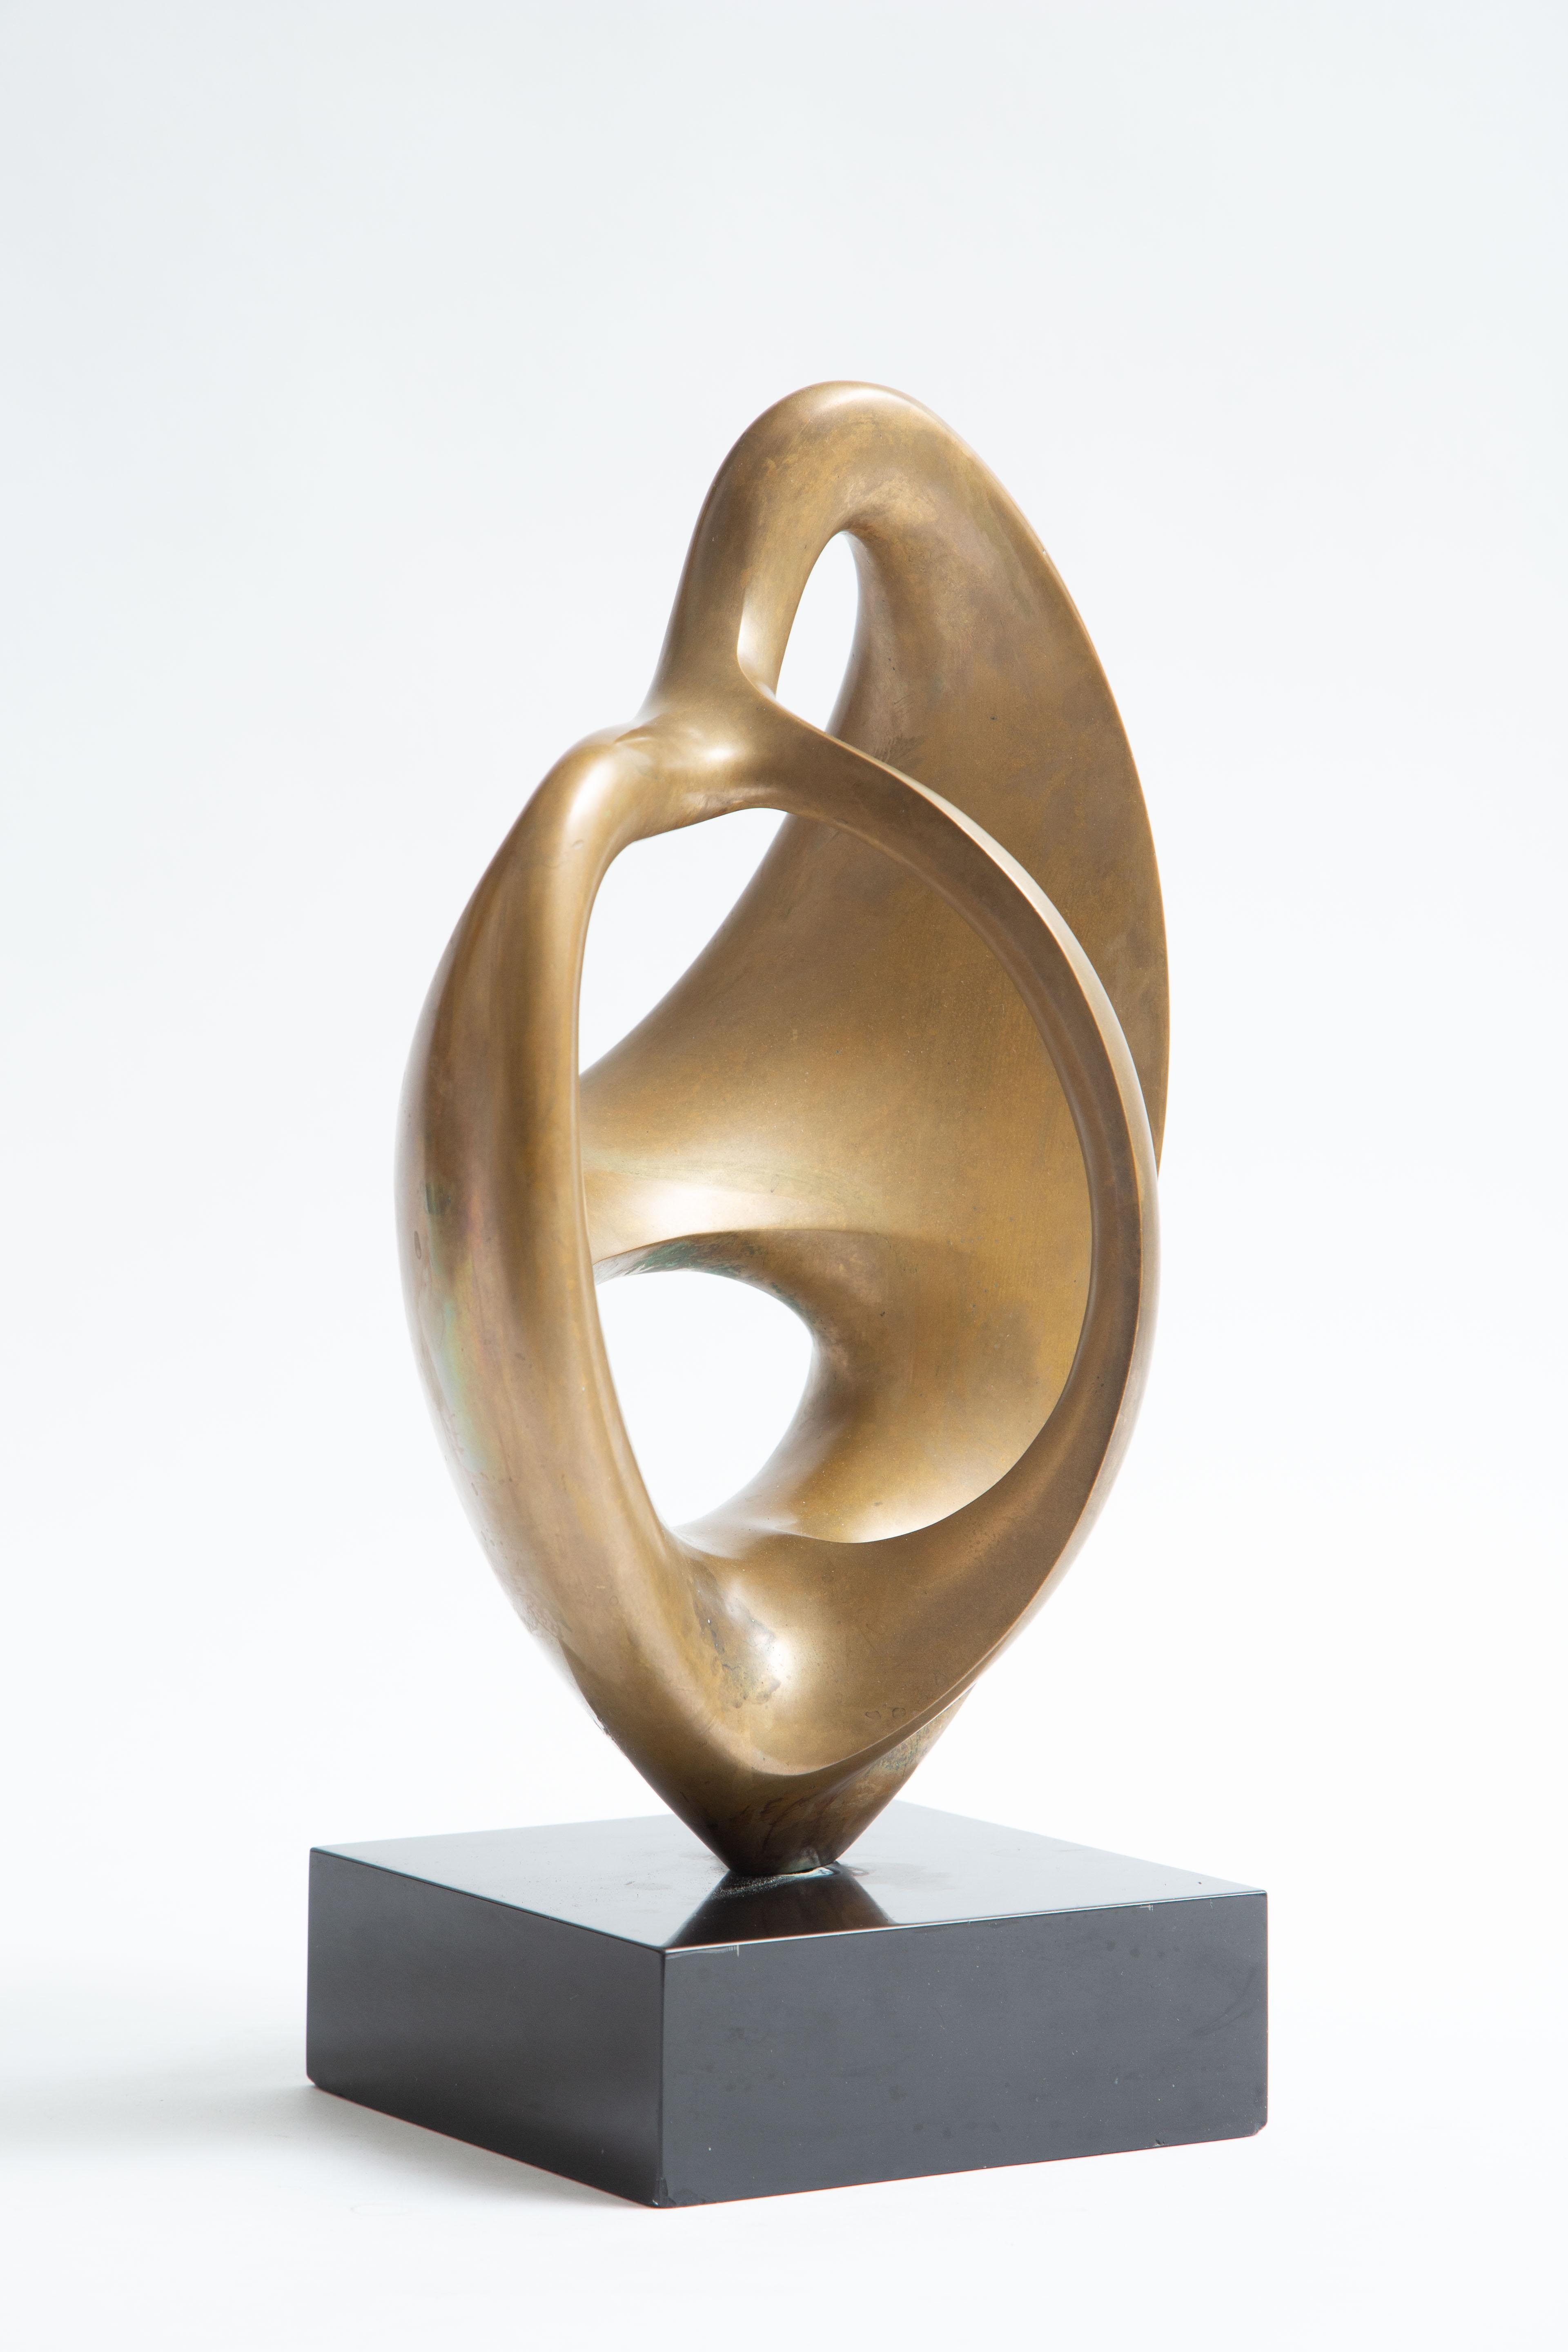 Canadian Antonio Grediaga Kieff Sculpture For Sale